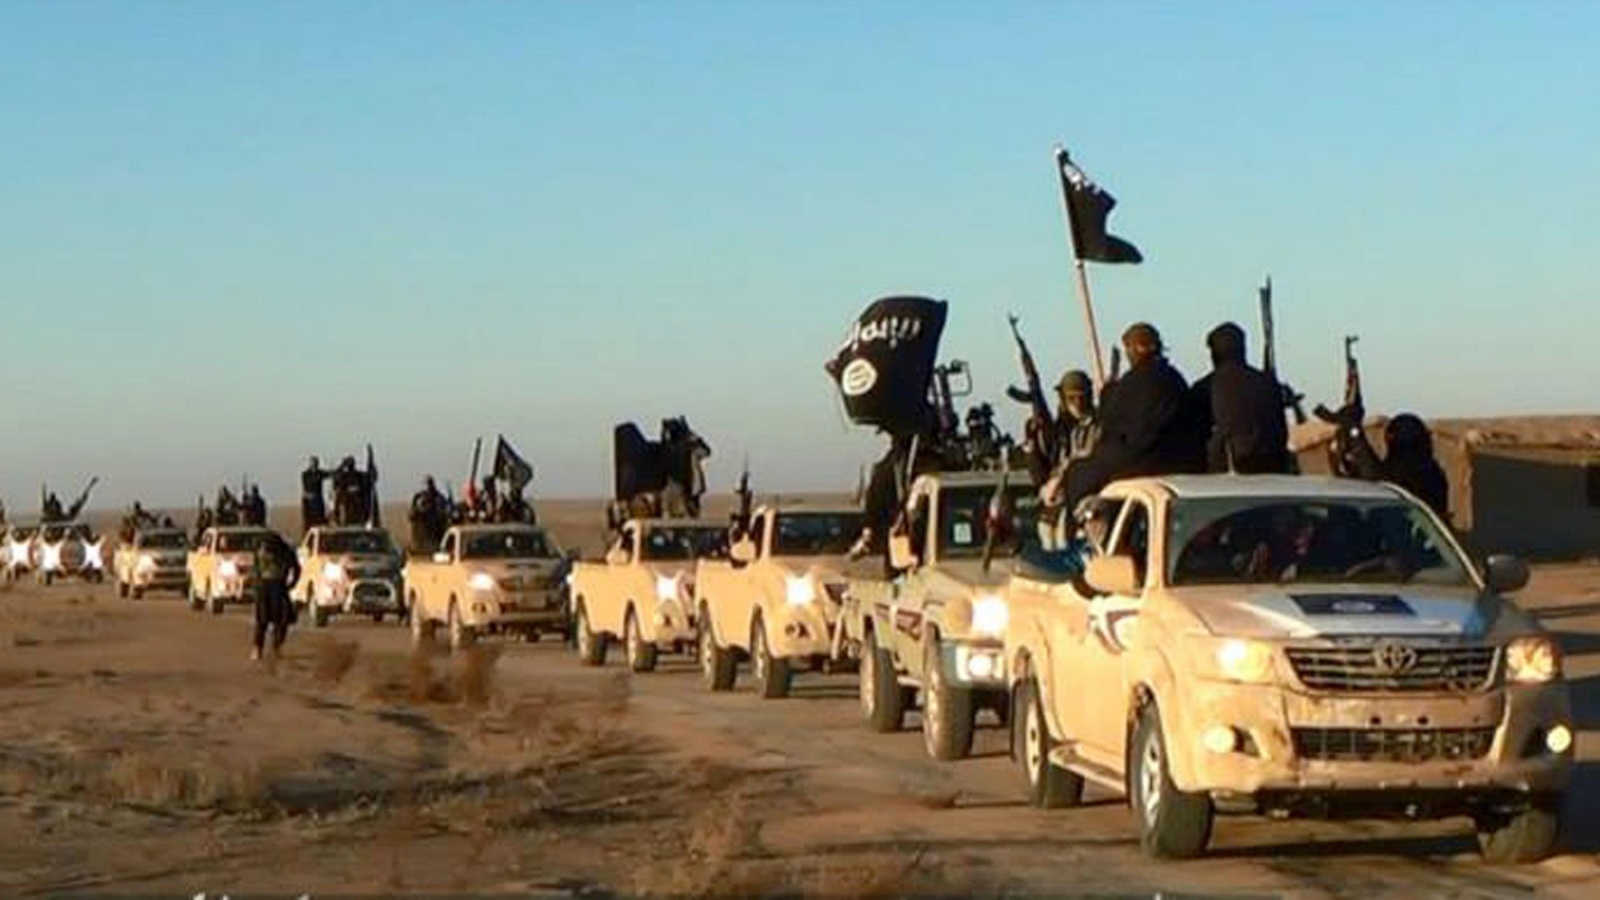 ‪قافلة لمقاتلي تنظيم الدولة ينتشرون في منطقة الأنبار غربي العراق منتصف 2014‬ (أسوشيتد برس)